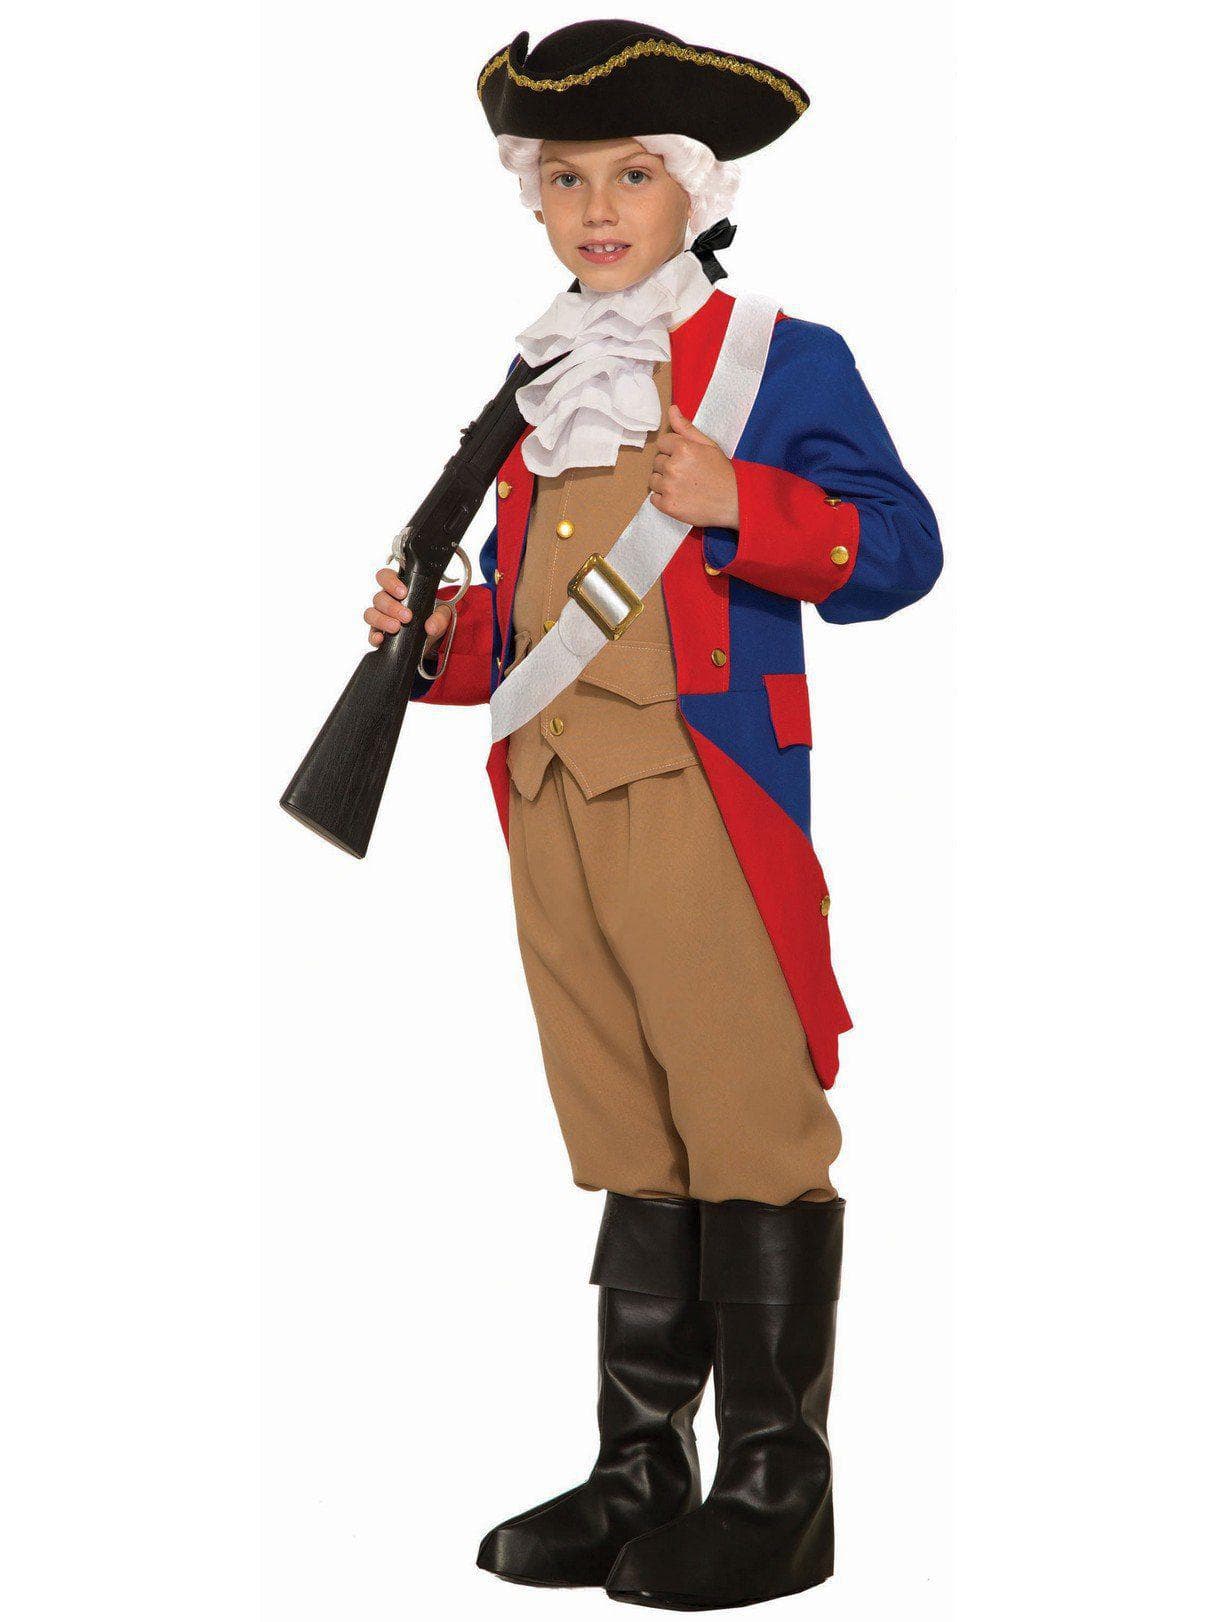 Kid's Patriotic Soldier Costume - costumes.com